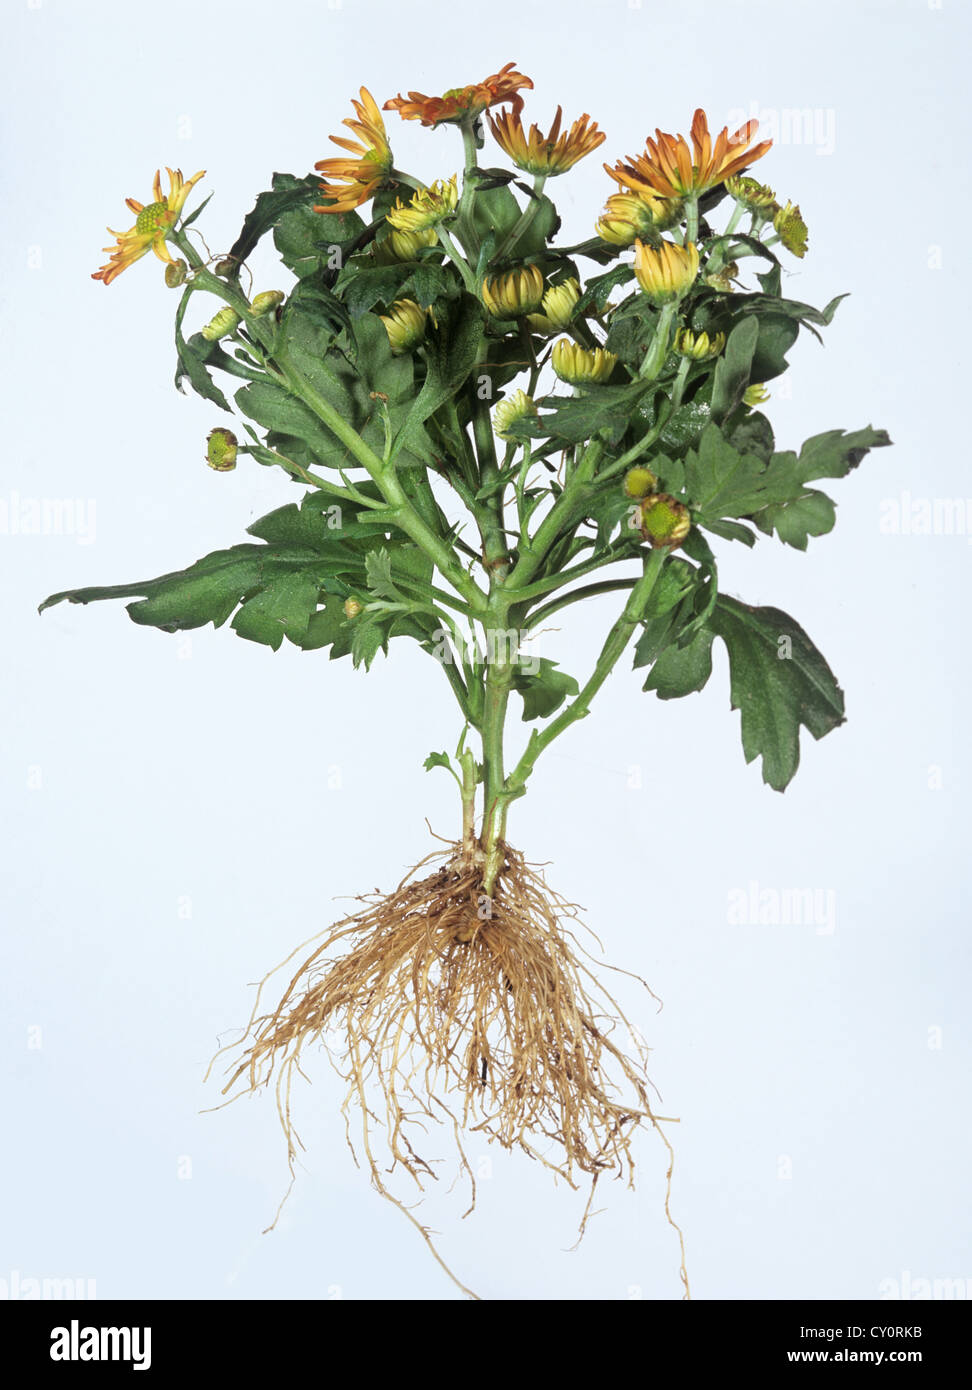 Planta de crisantemo mostrando flores, follajes y raíces contra un fondo blanco. Foto de stock